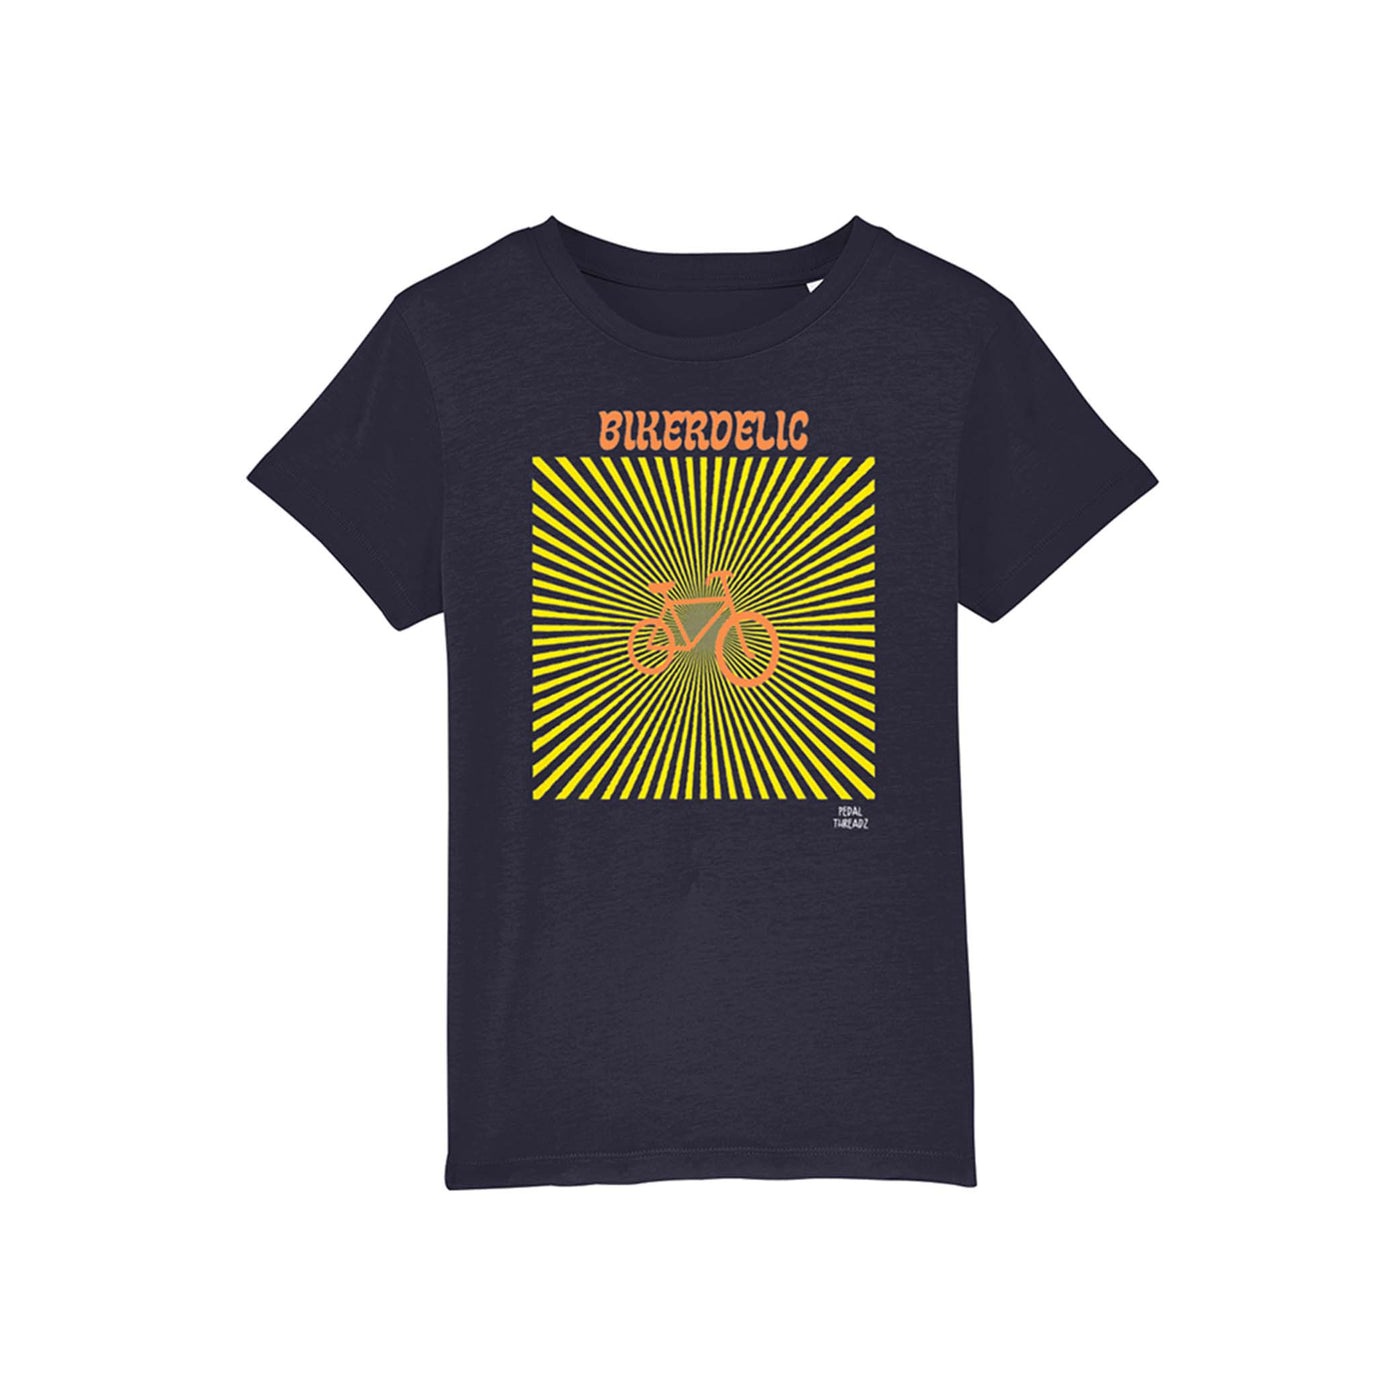 Children's navy t-shirt featuring bikerdelic pattern.